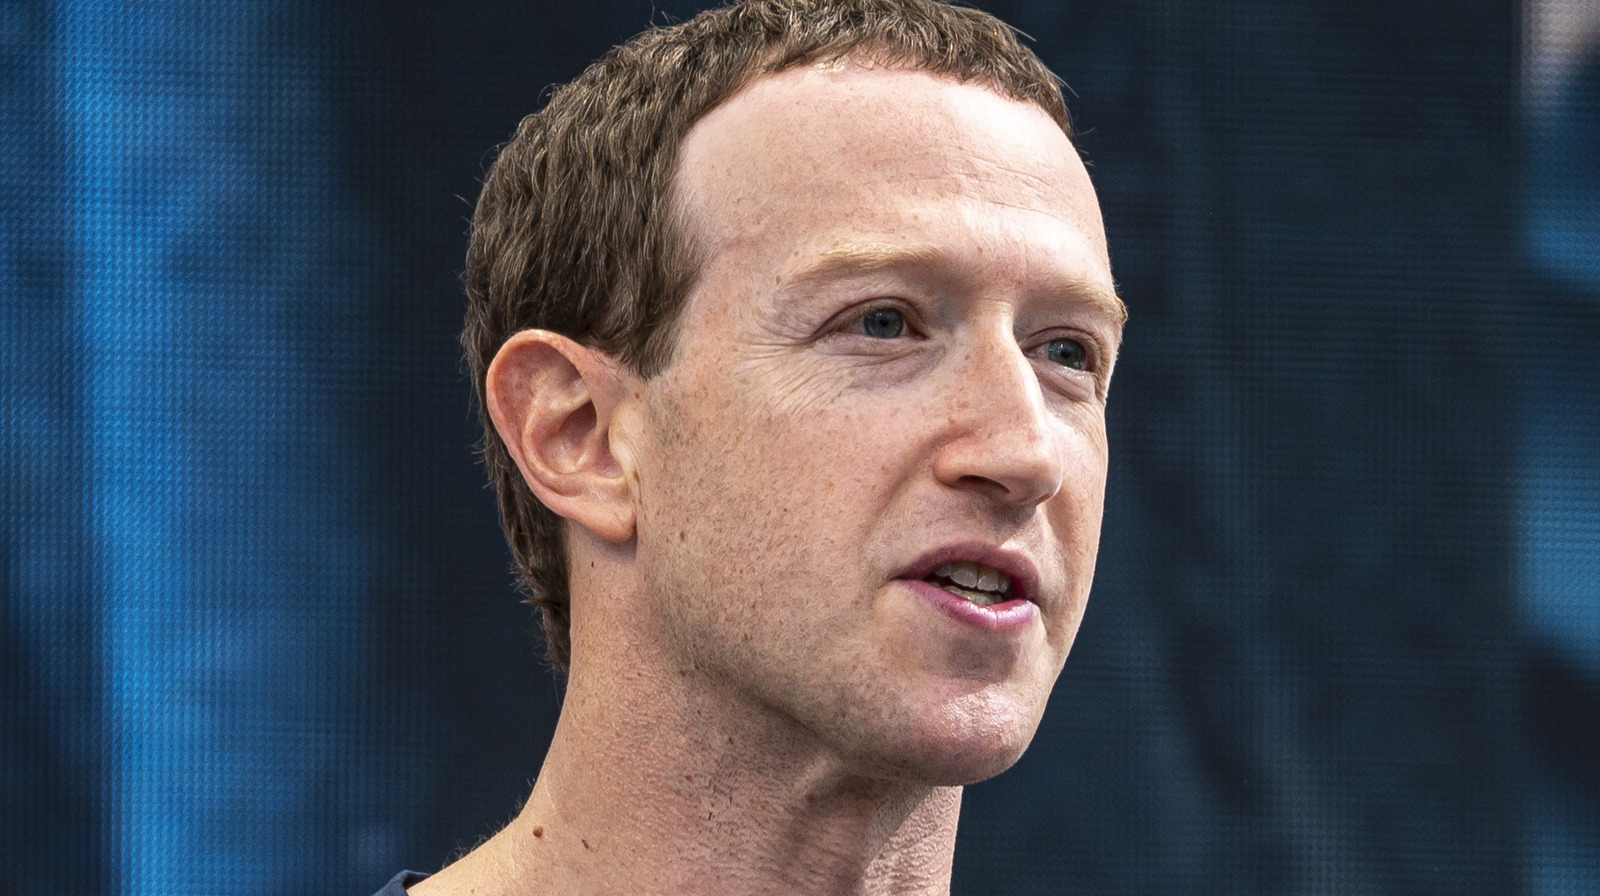 Mark Zuckerberg Shares Hospital Photo Following MMA Training Injury